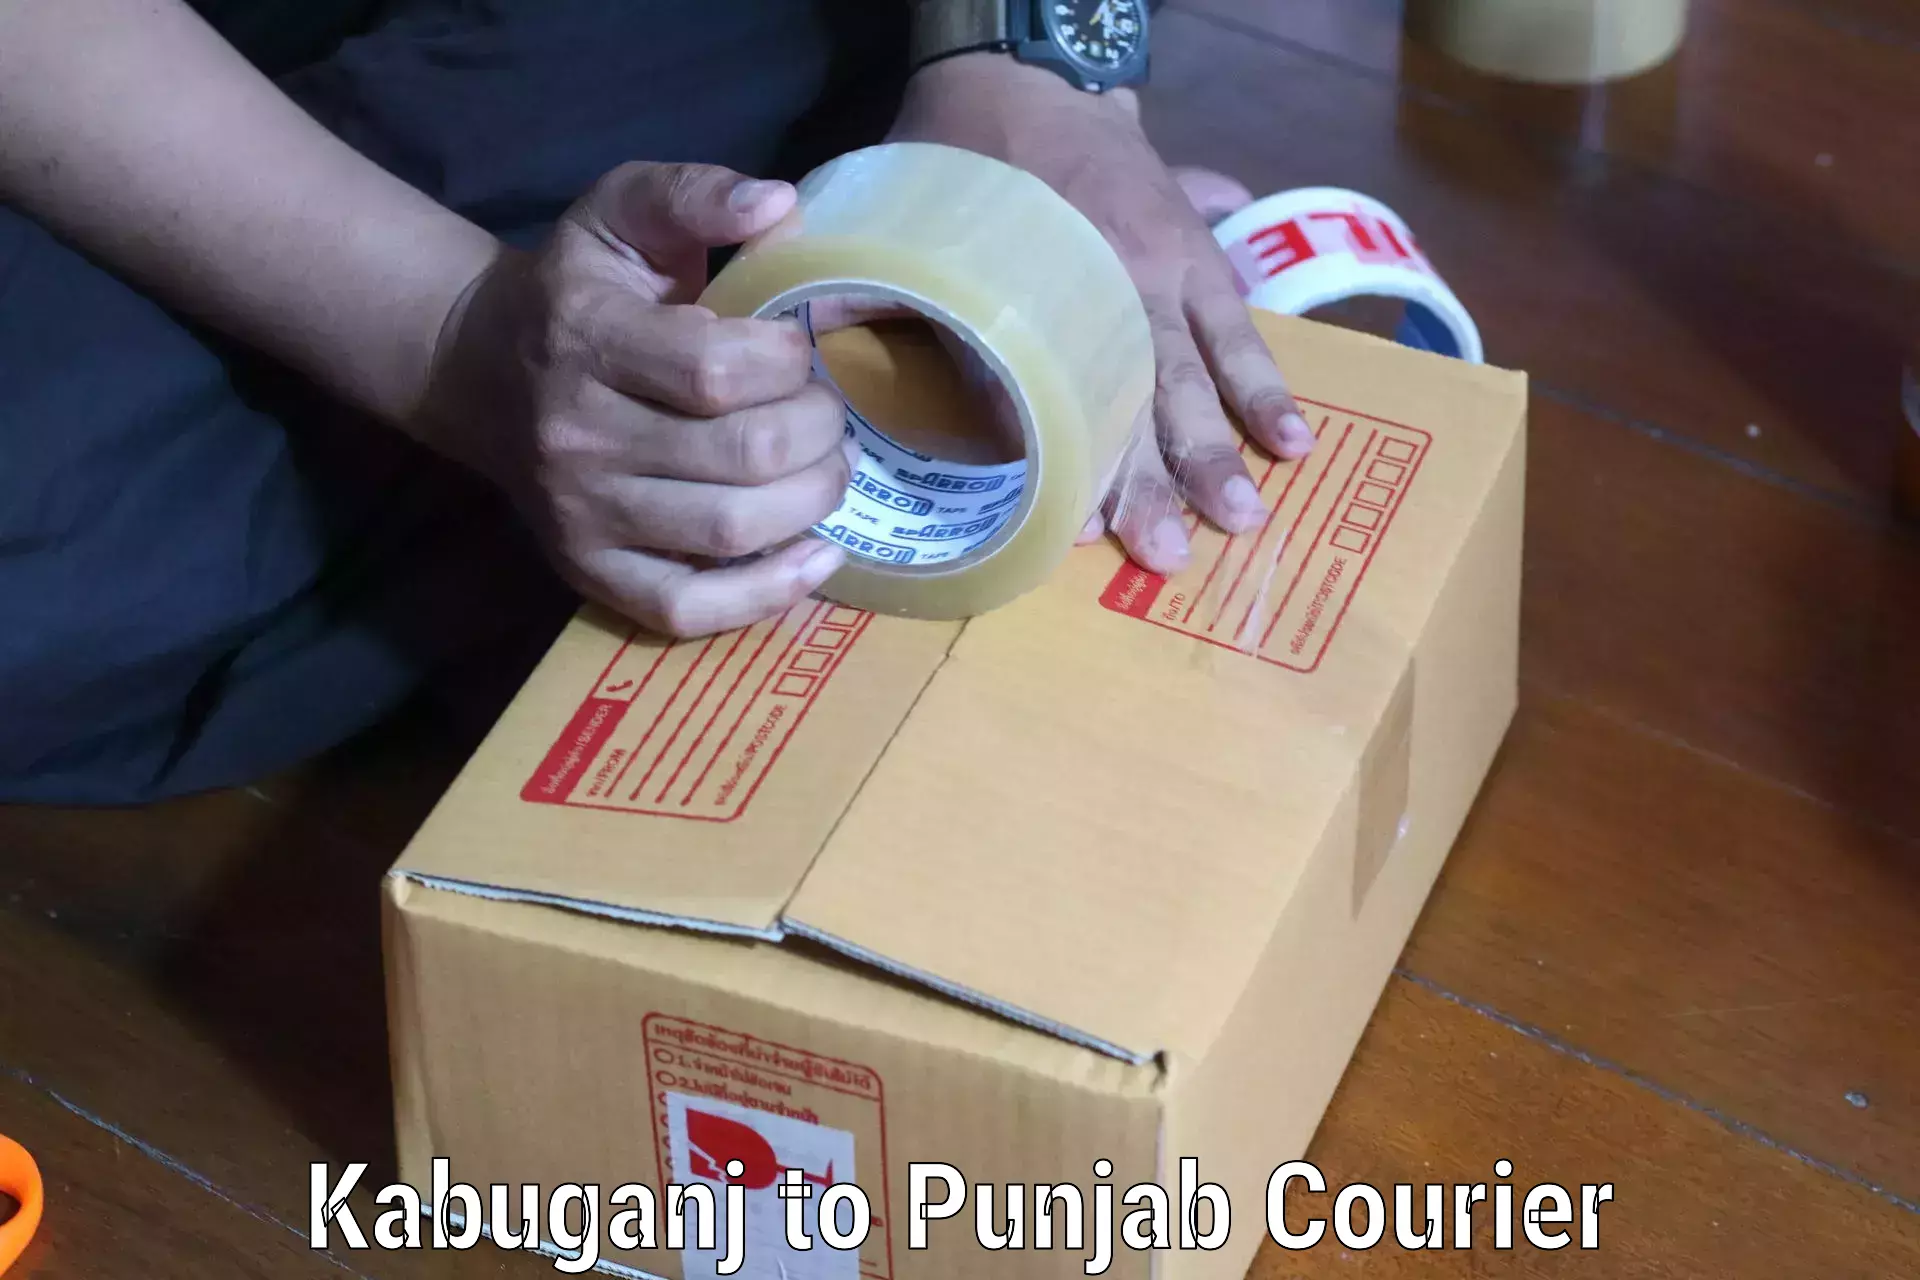 Nationwide delivery network Kabuganj to Jalandhar